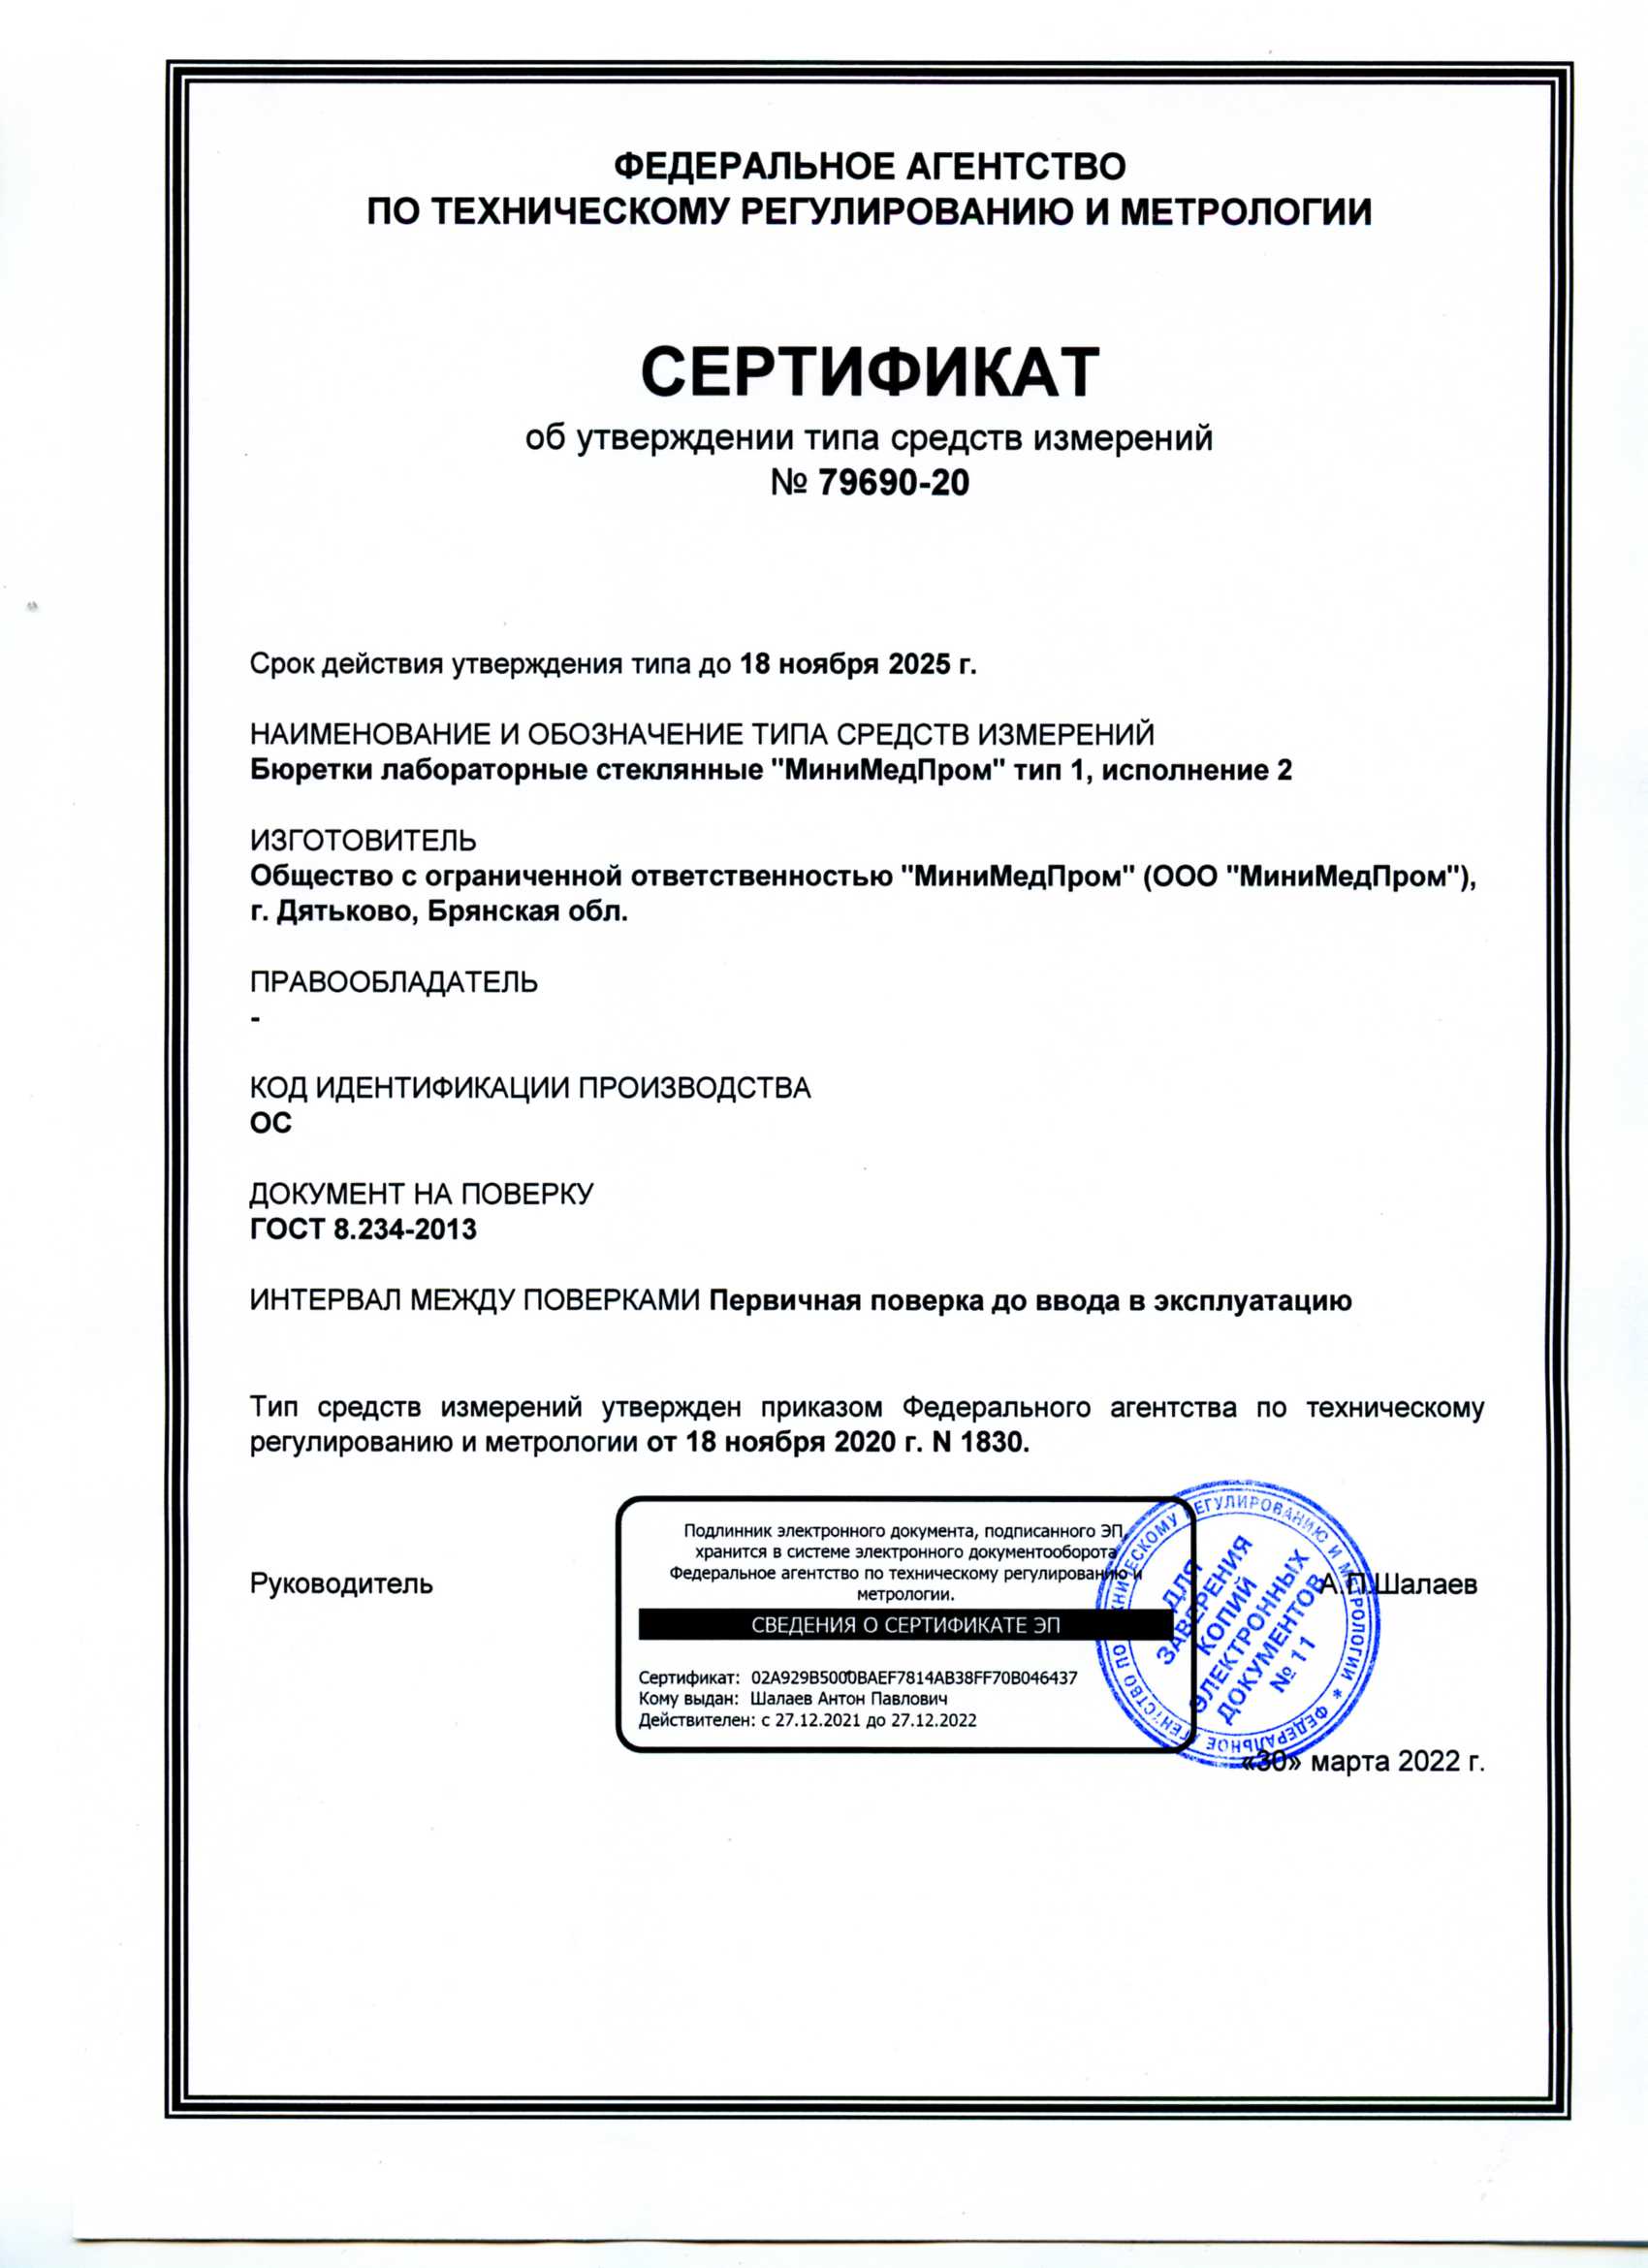 Бюретки лабораторные стеклянные ММП тип 1 исп. 2. Сертификат об утверждении ТСИ 